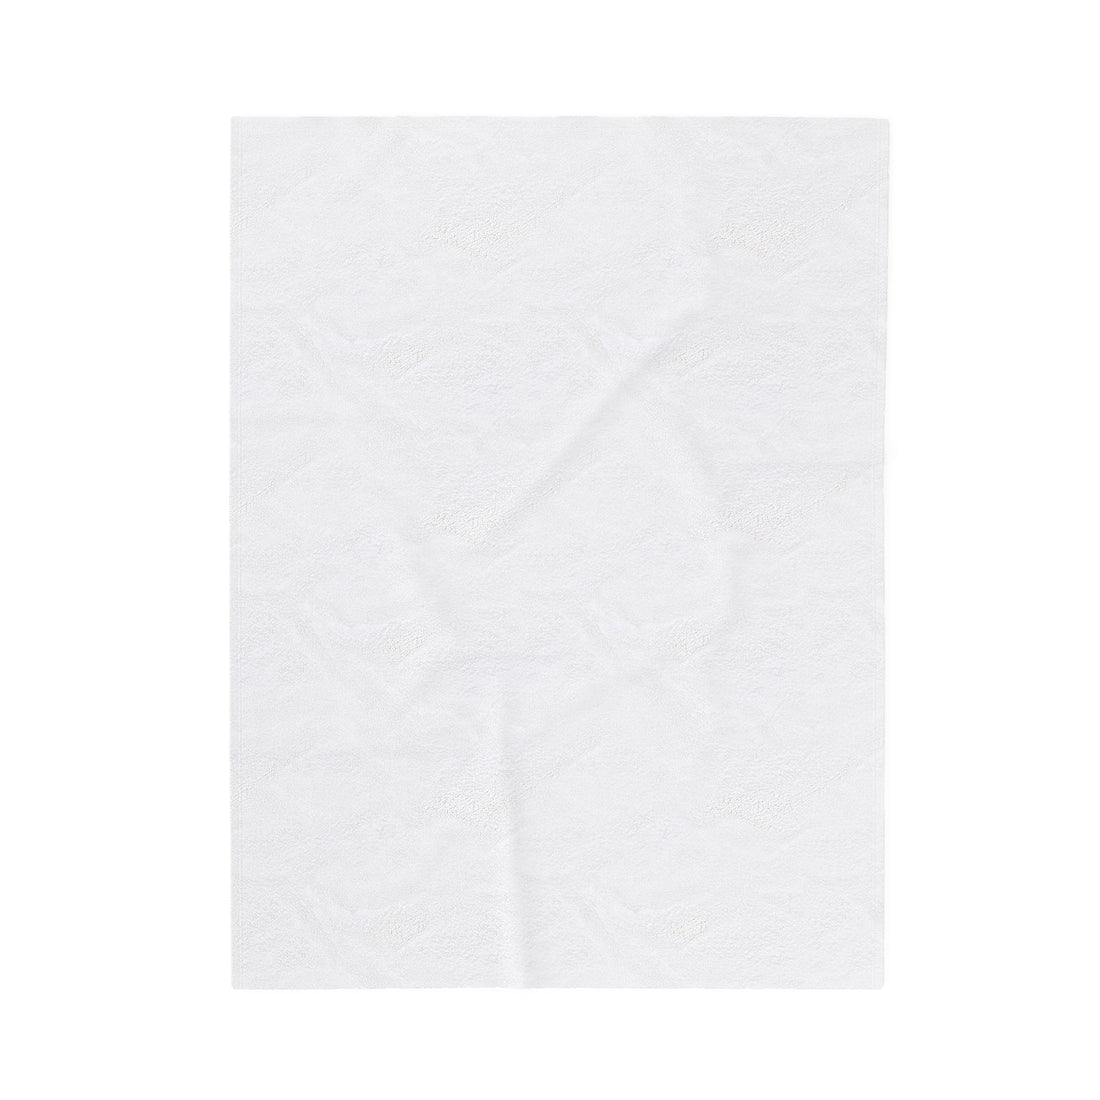 Oiler Pride Velveteen Plush Blanket - All Over Prints - Positively Sassy - Oiler Pride Velveteen Plush Blanket